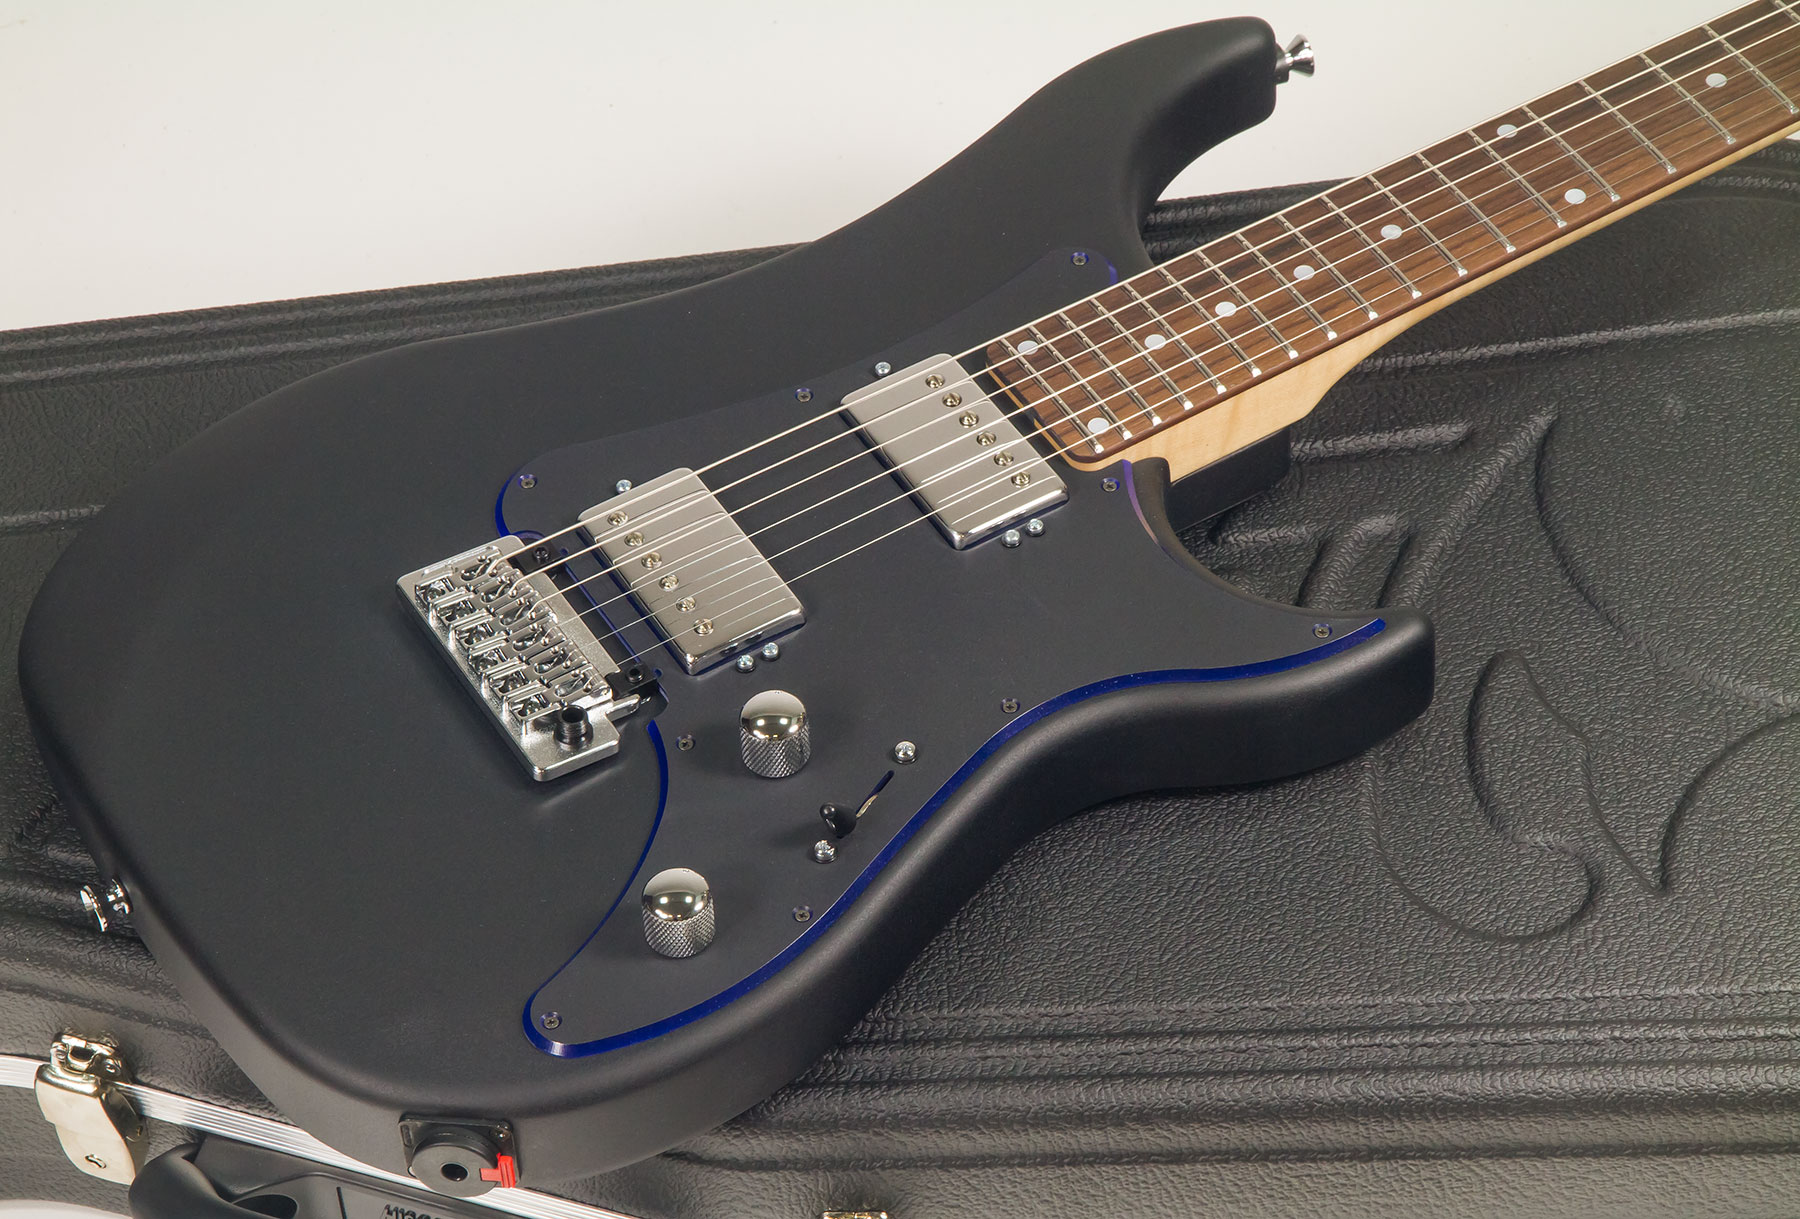 Vigier Excalibur Indus Hh Trem Rw - Textured Black - Double Cut E-Gitarre - Variation 1